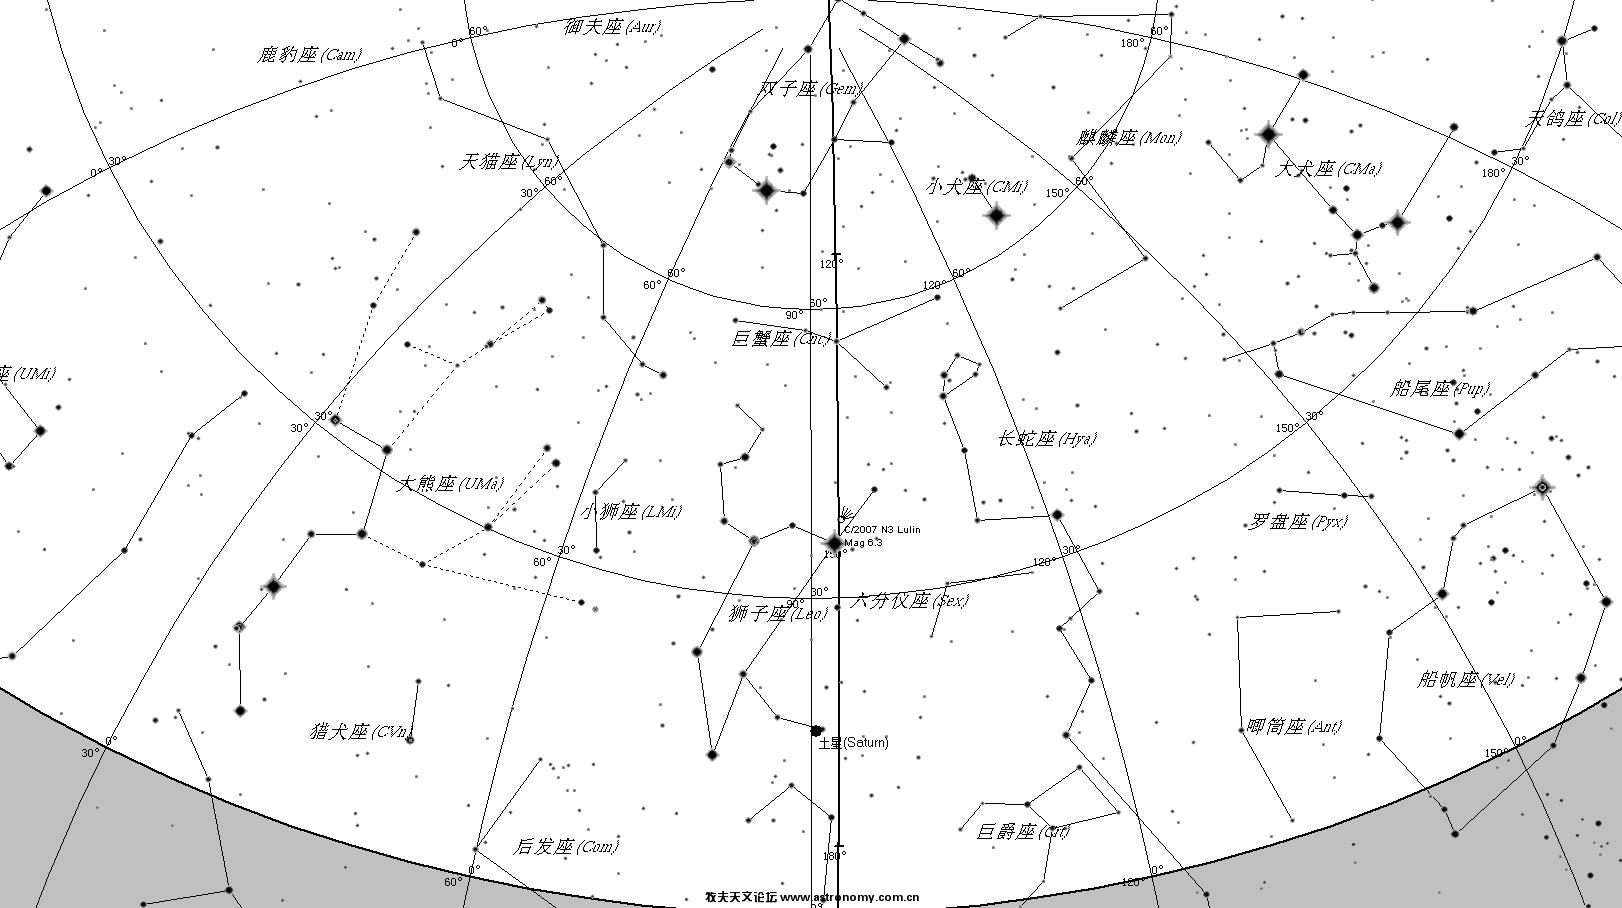 2009-02-28 星图.jpg